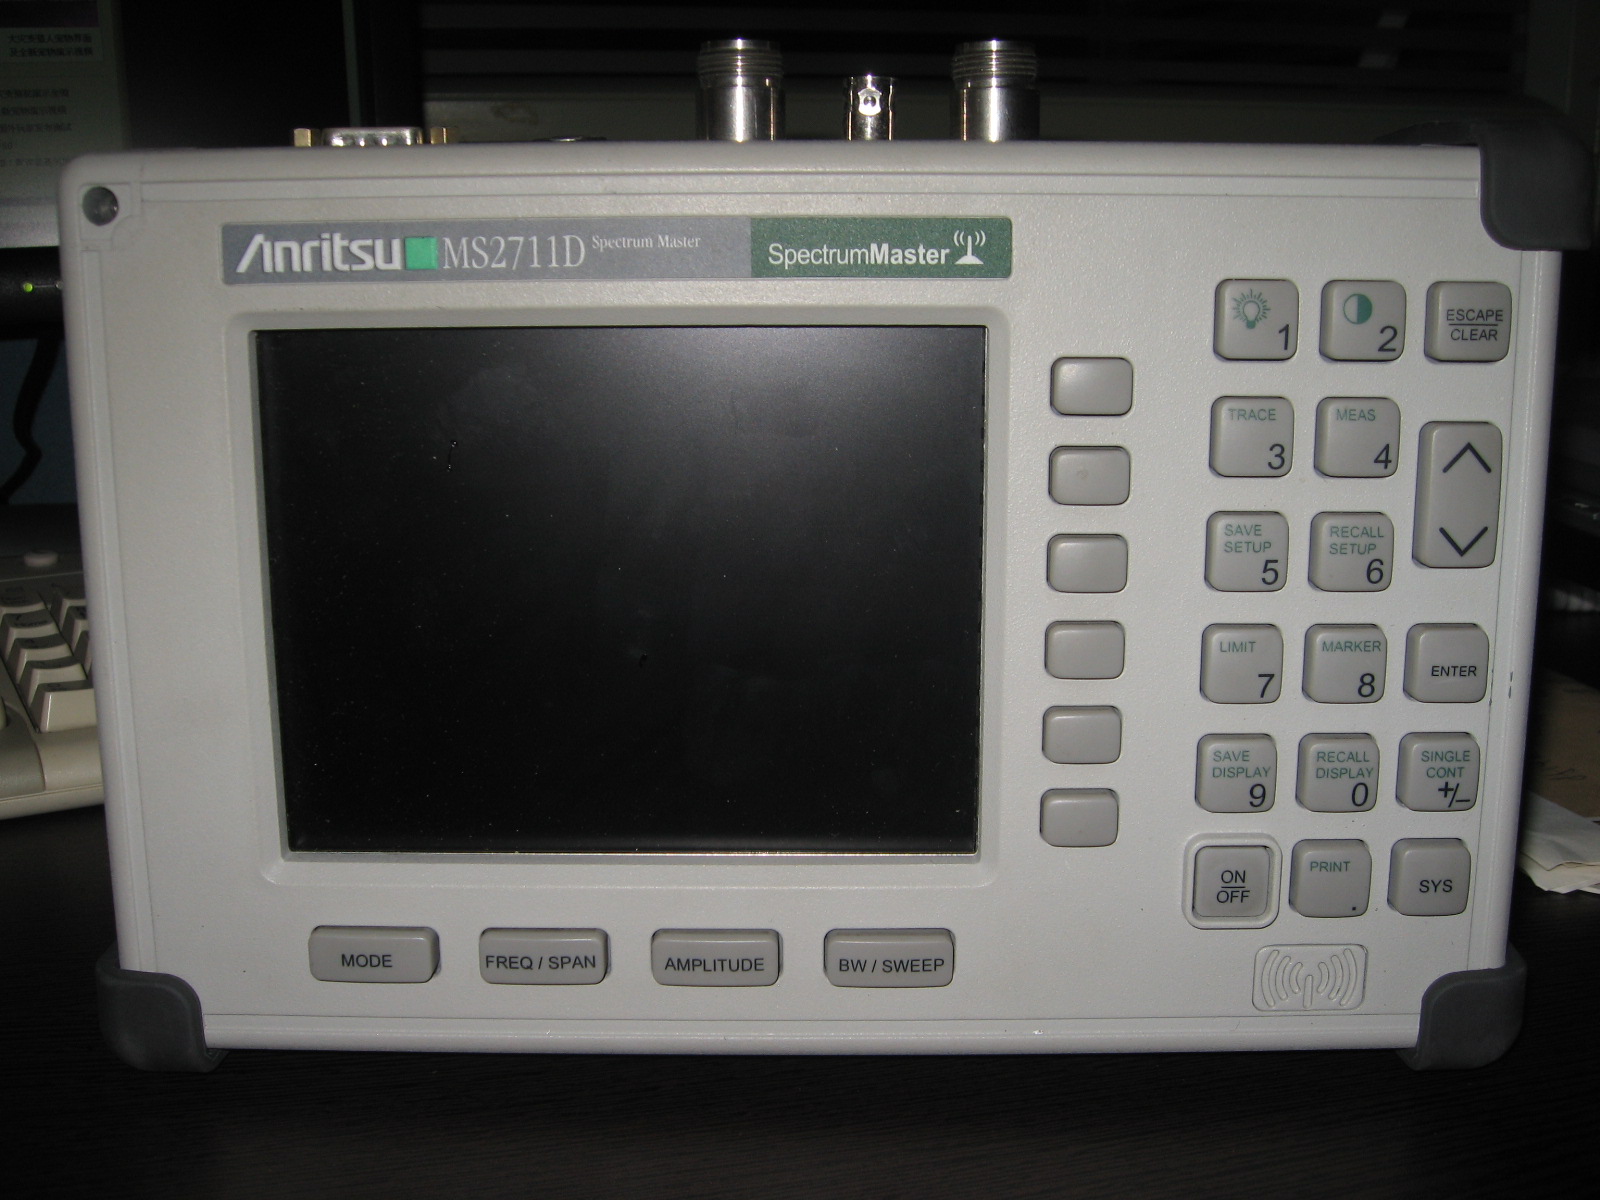 租赁 MS2711D/AnritsuMS2713E手持频谱分析仪3G